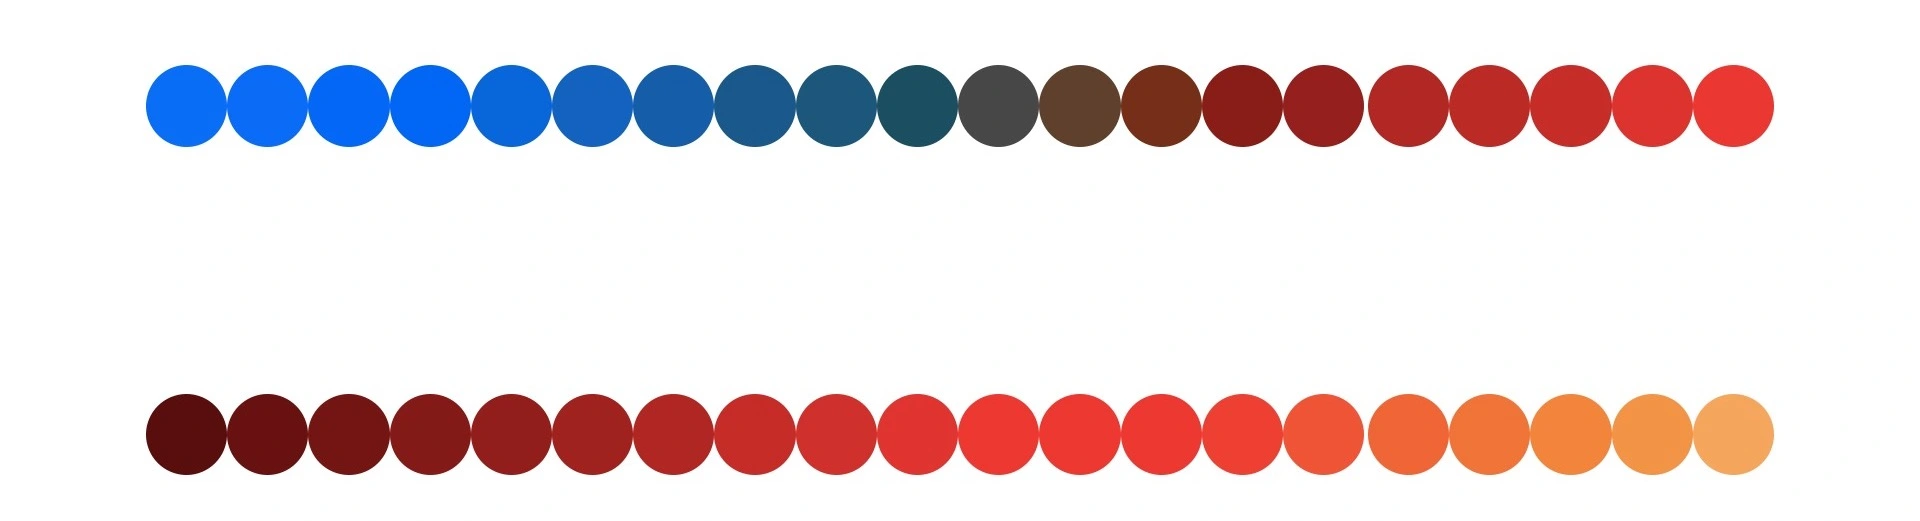 可视化工程中颜色应用 - 图8